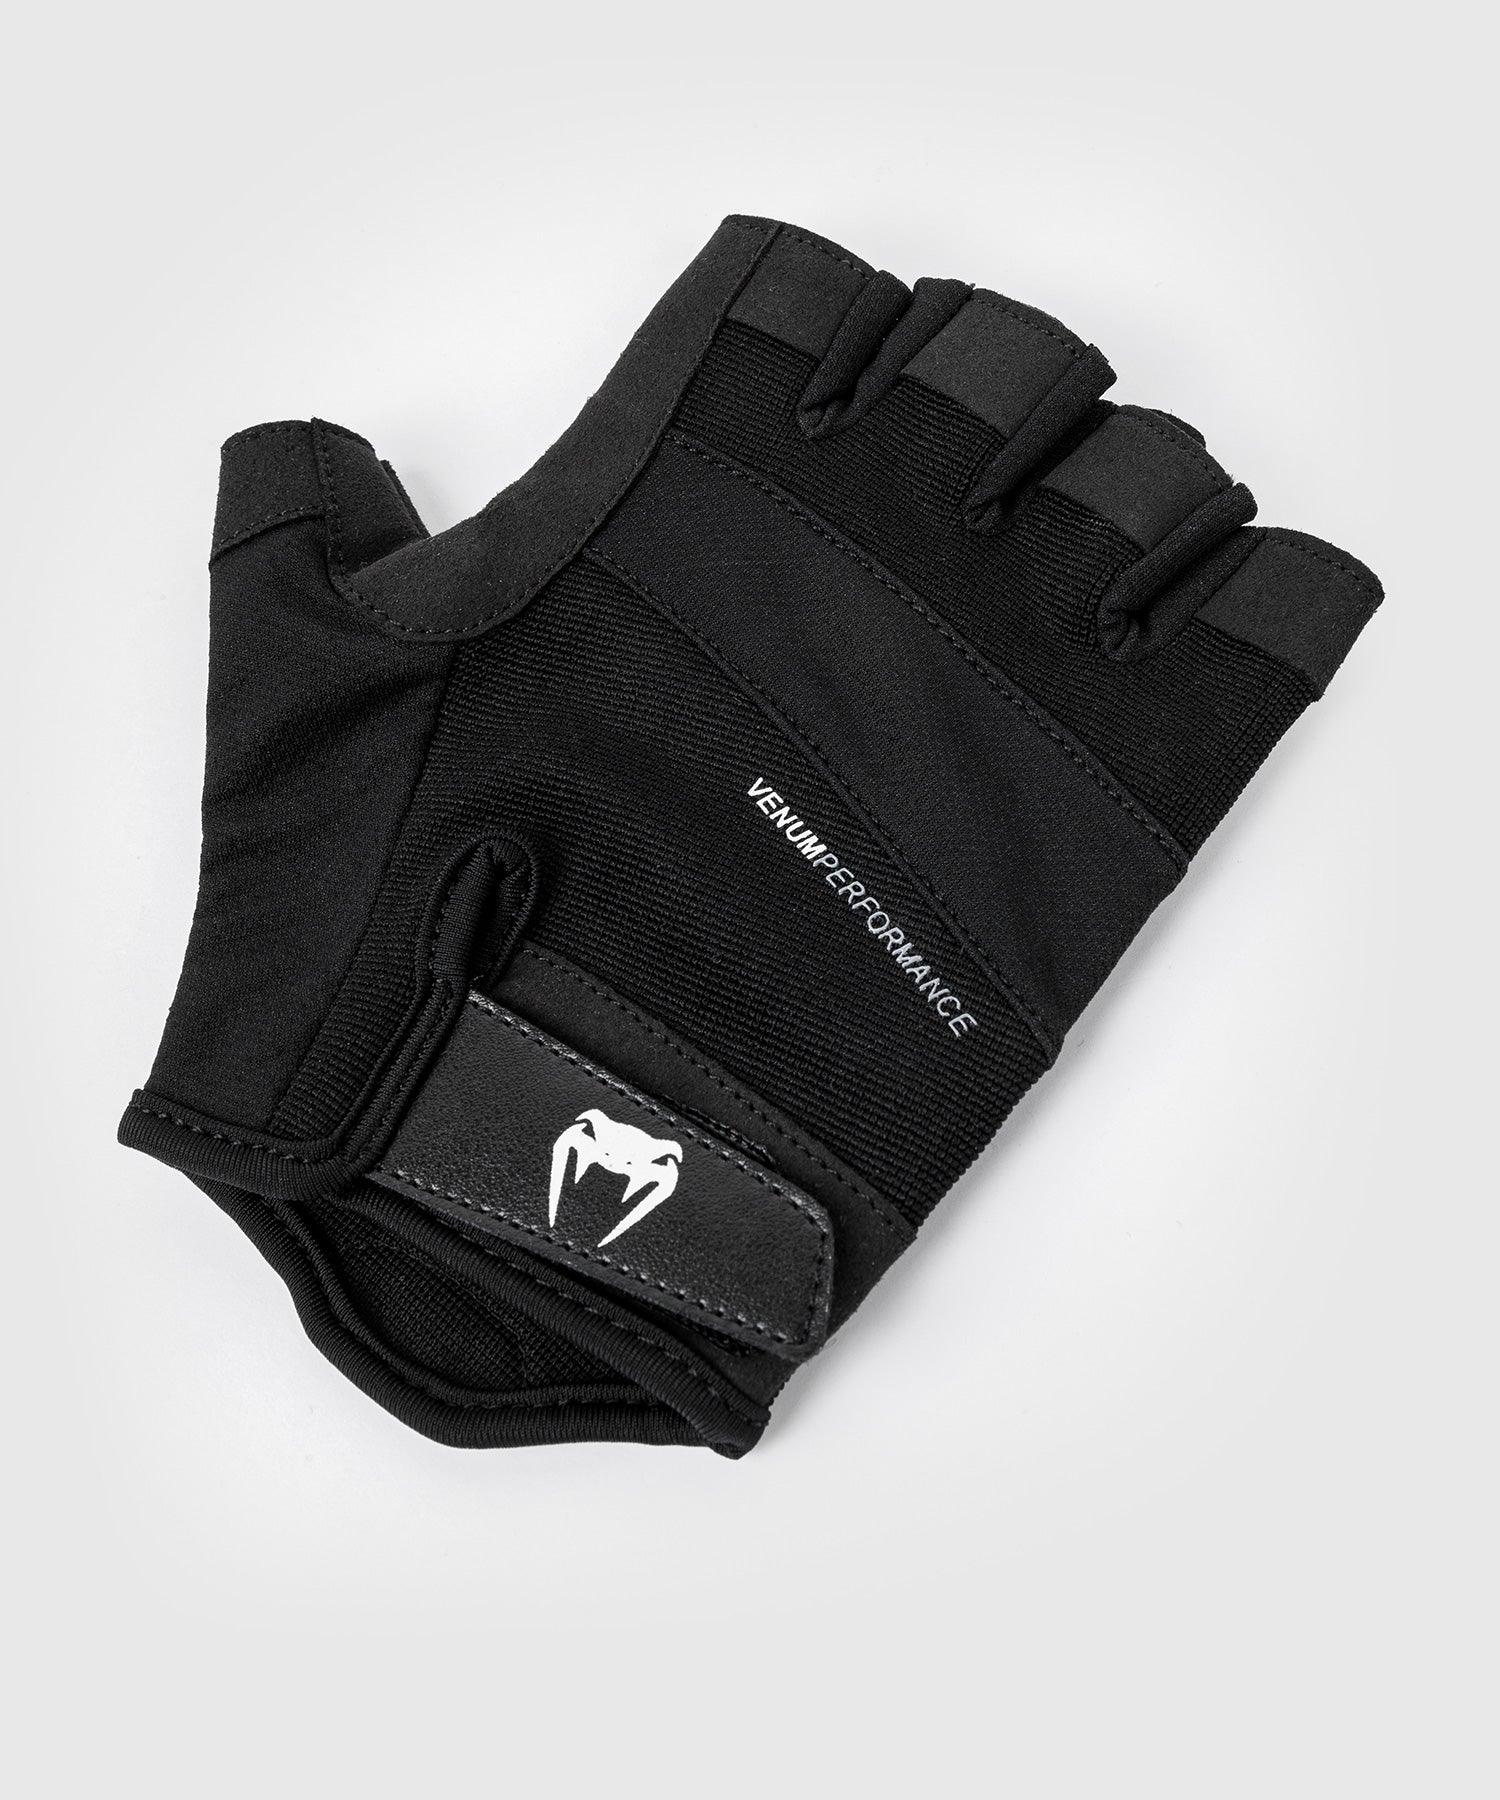 Venum HyperLift 2.0 Weightlifting Gloves - Venum Asia